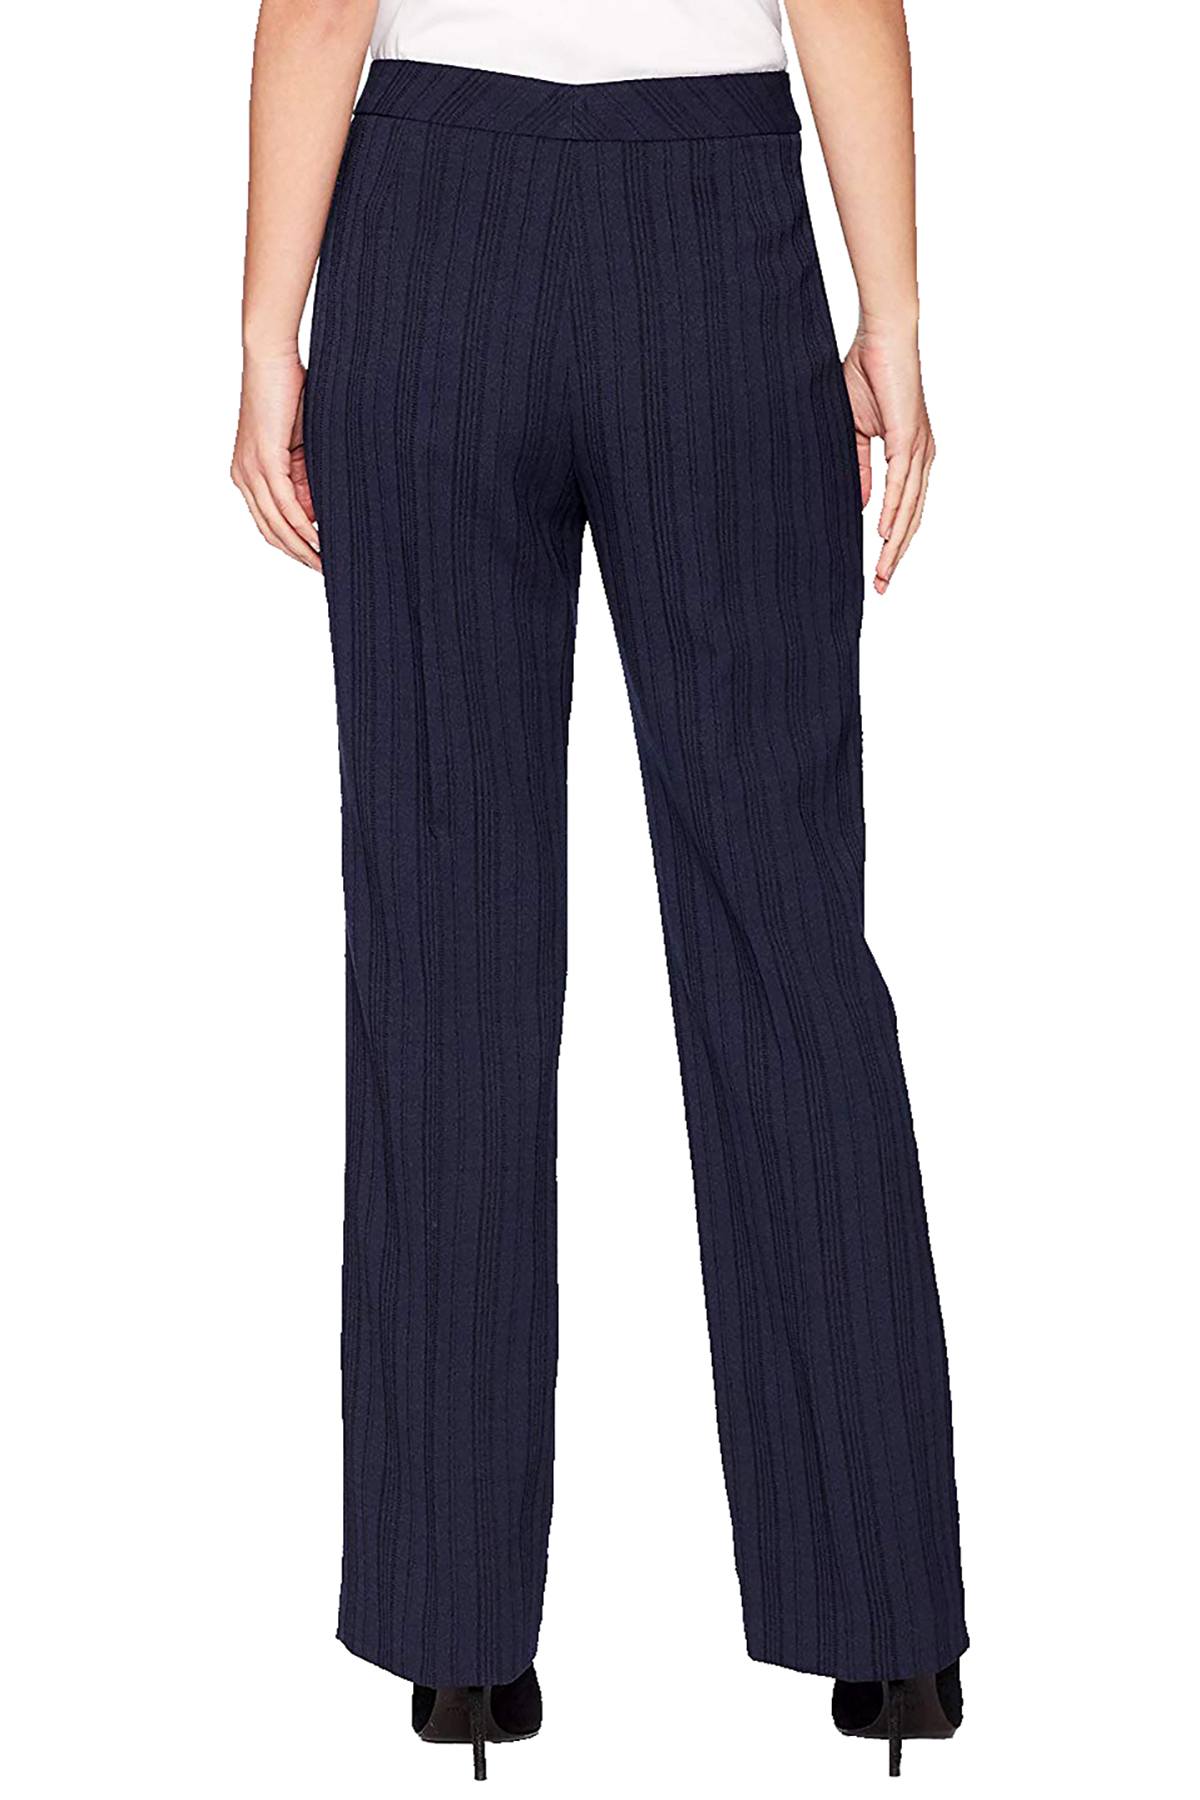 Le Suit Navy Tonal-Stripe Textured Suit Pant